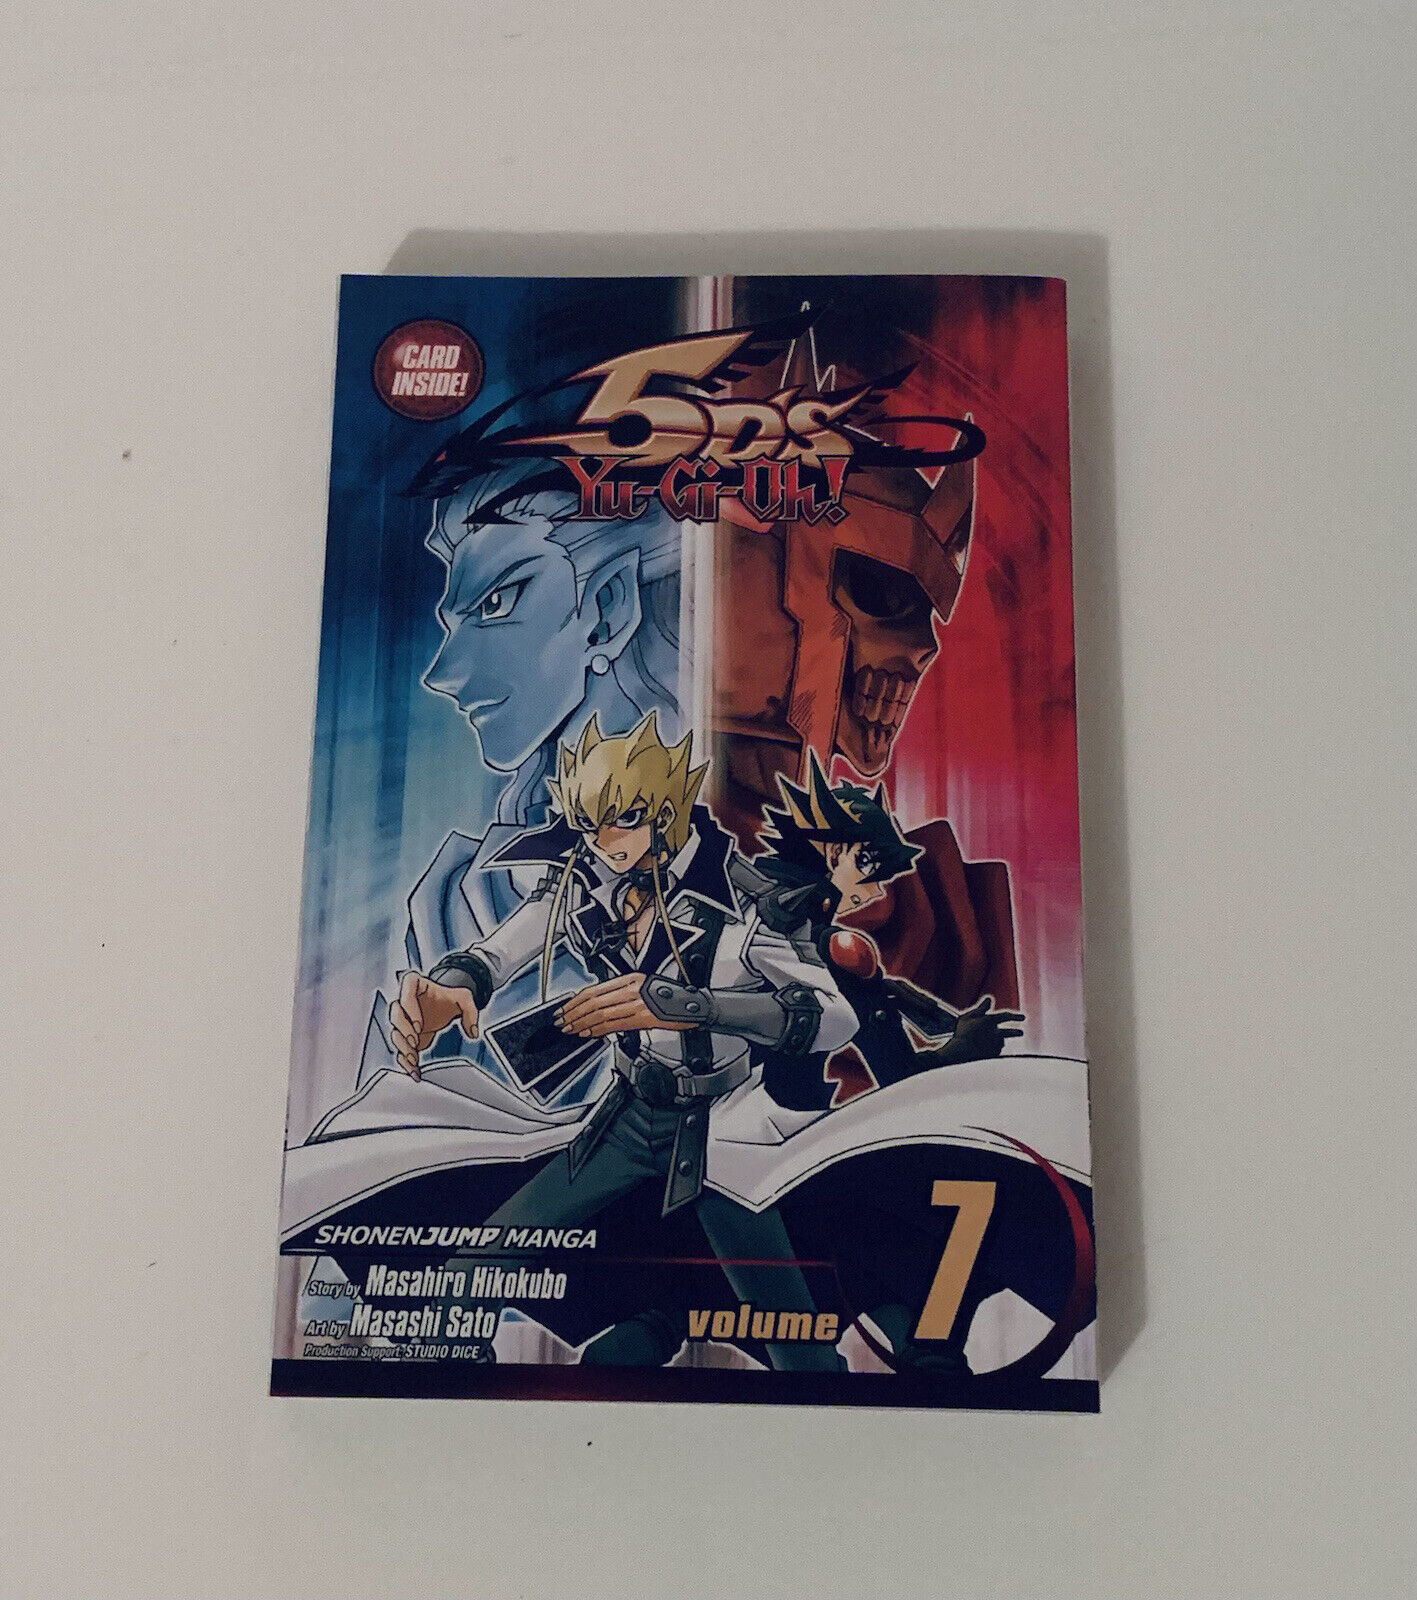 Yu-Gi-Oh 5D's Ser.: Yu-Gi-Oh 5D's, Vol. 7 by Masahiro Hikokubo. No Card Inside